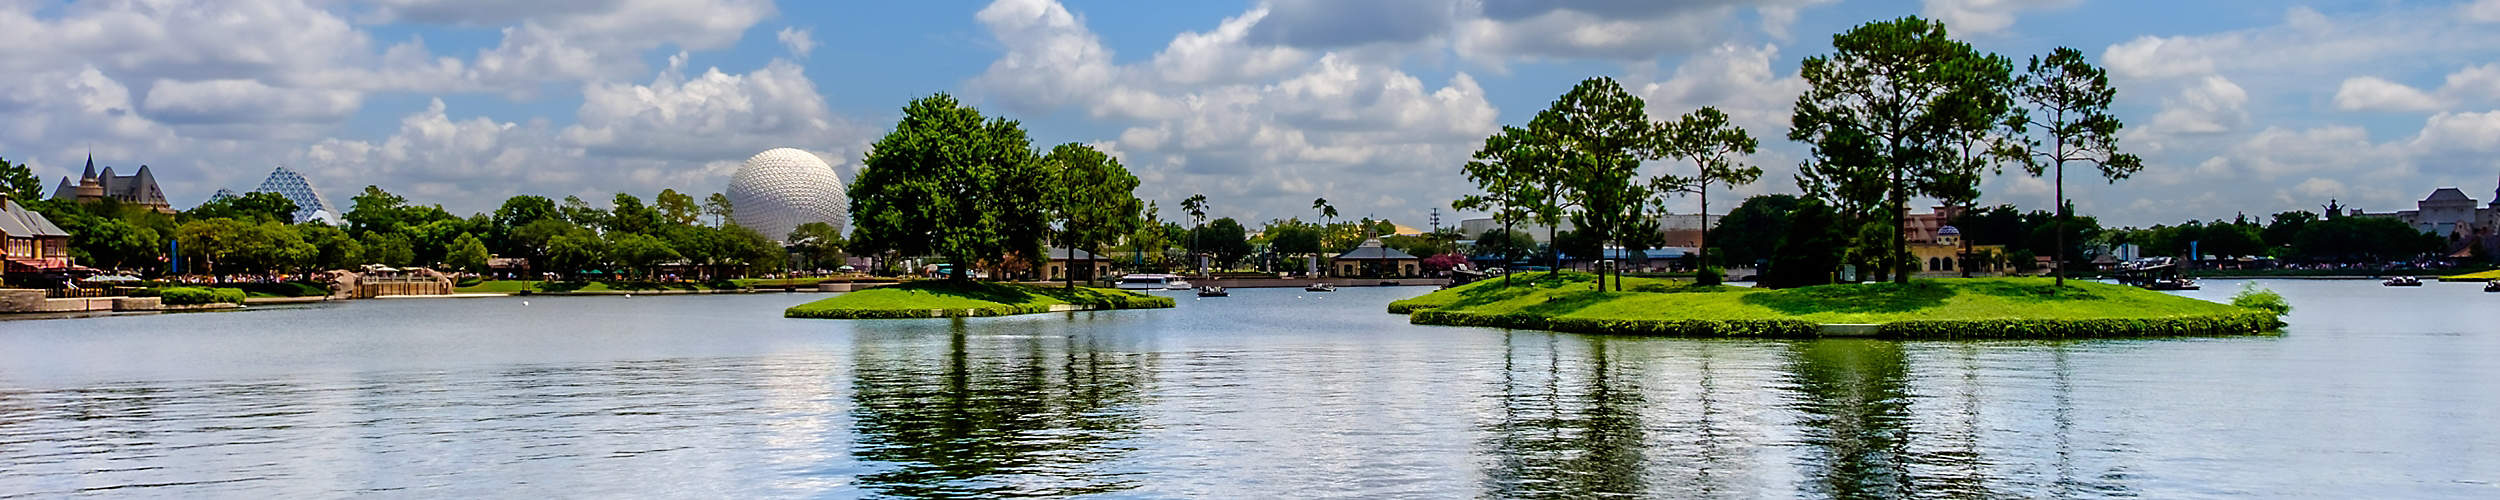 Epcot lakeside in Orlando Florida during summer